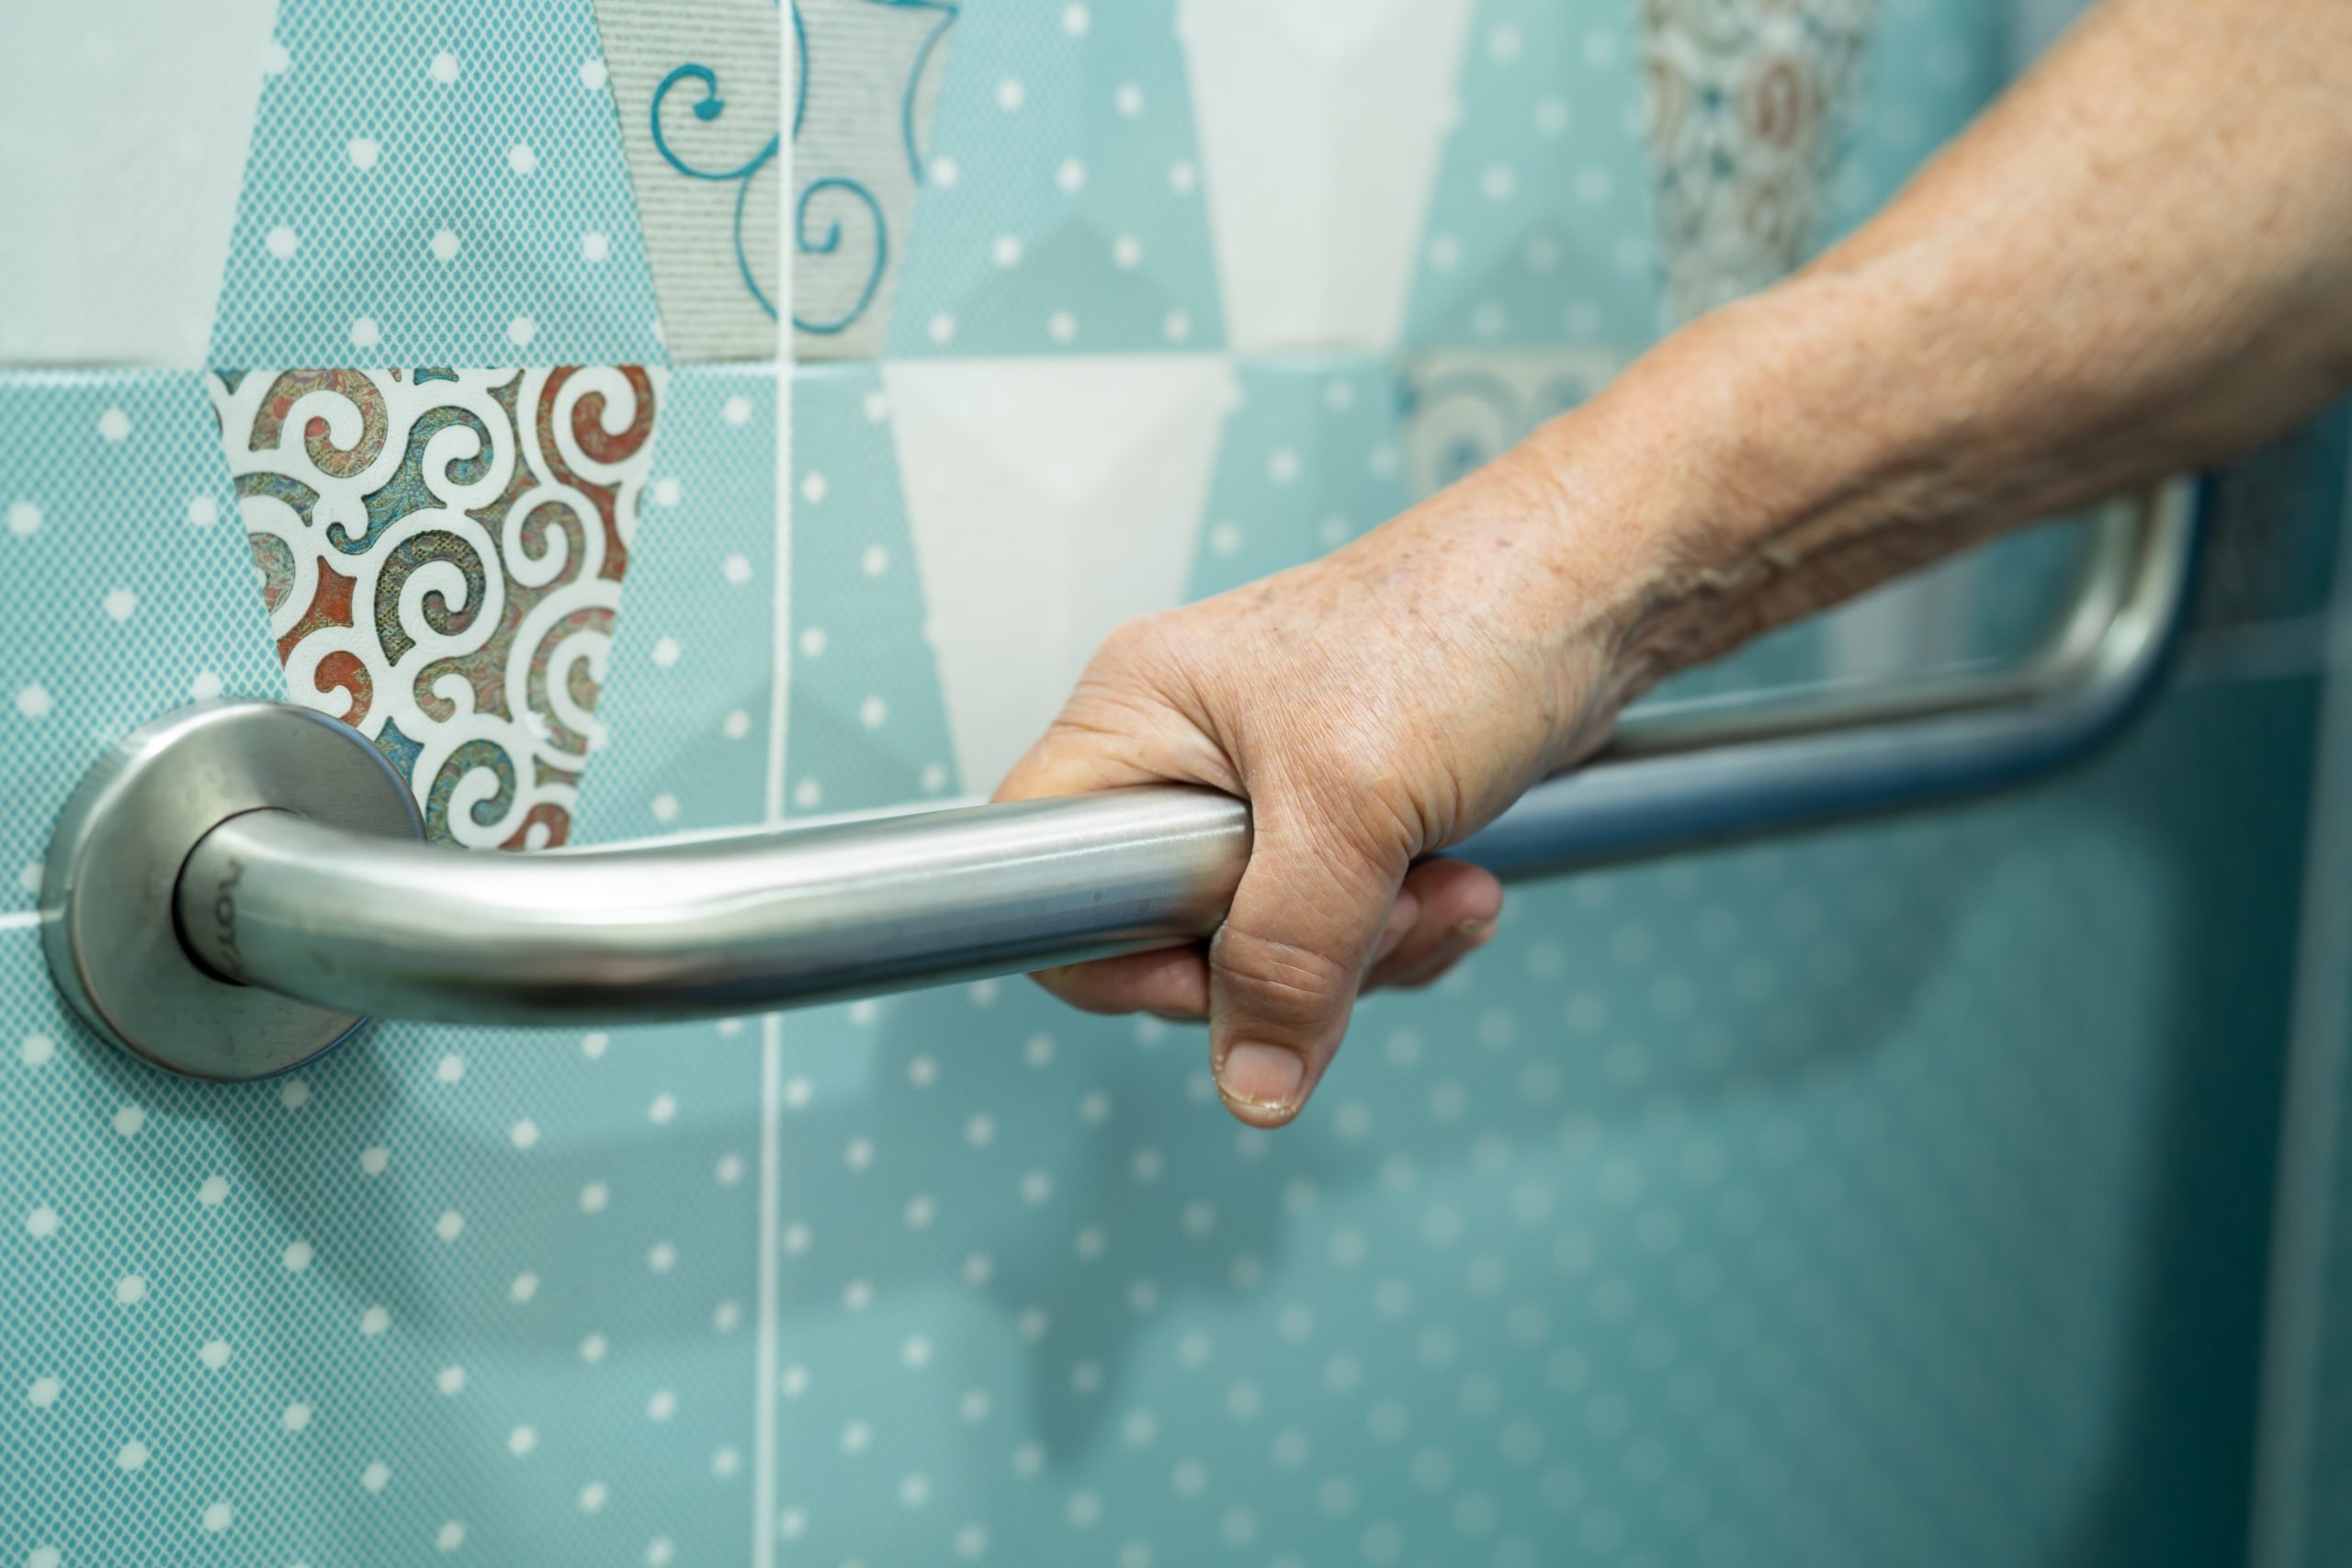 Personne âgée utilisant une poignée de sécurité dans une salle de bain